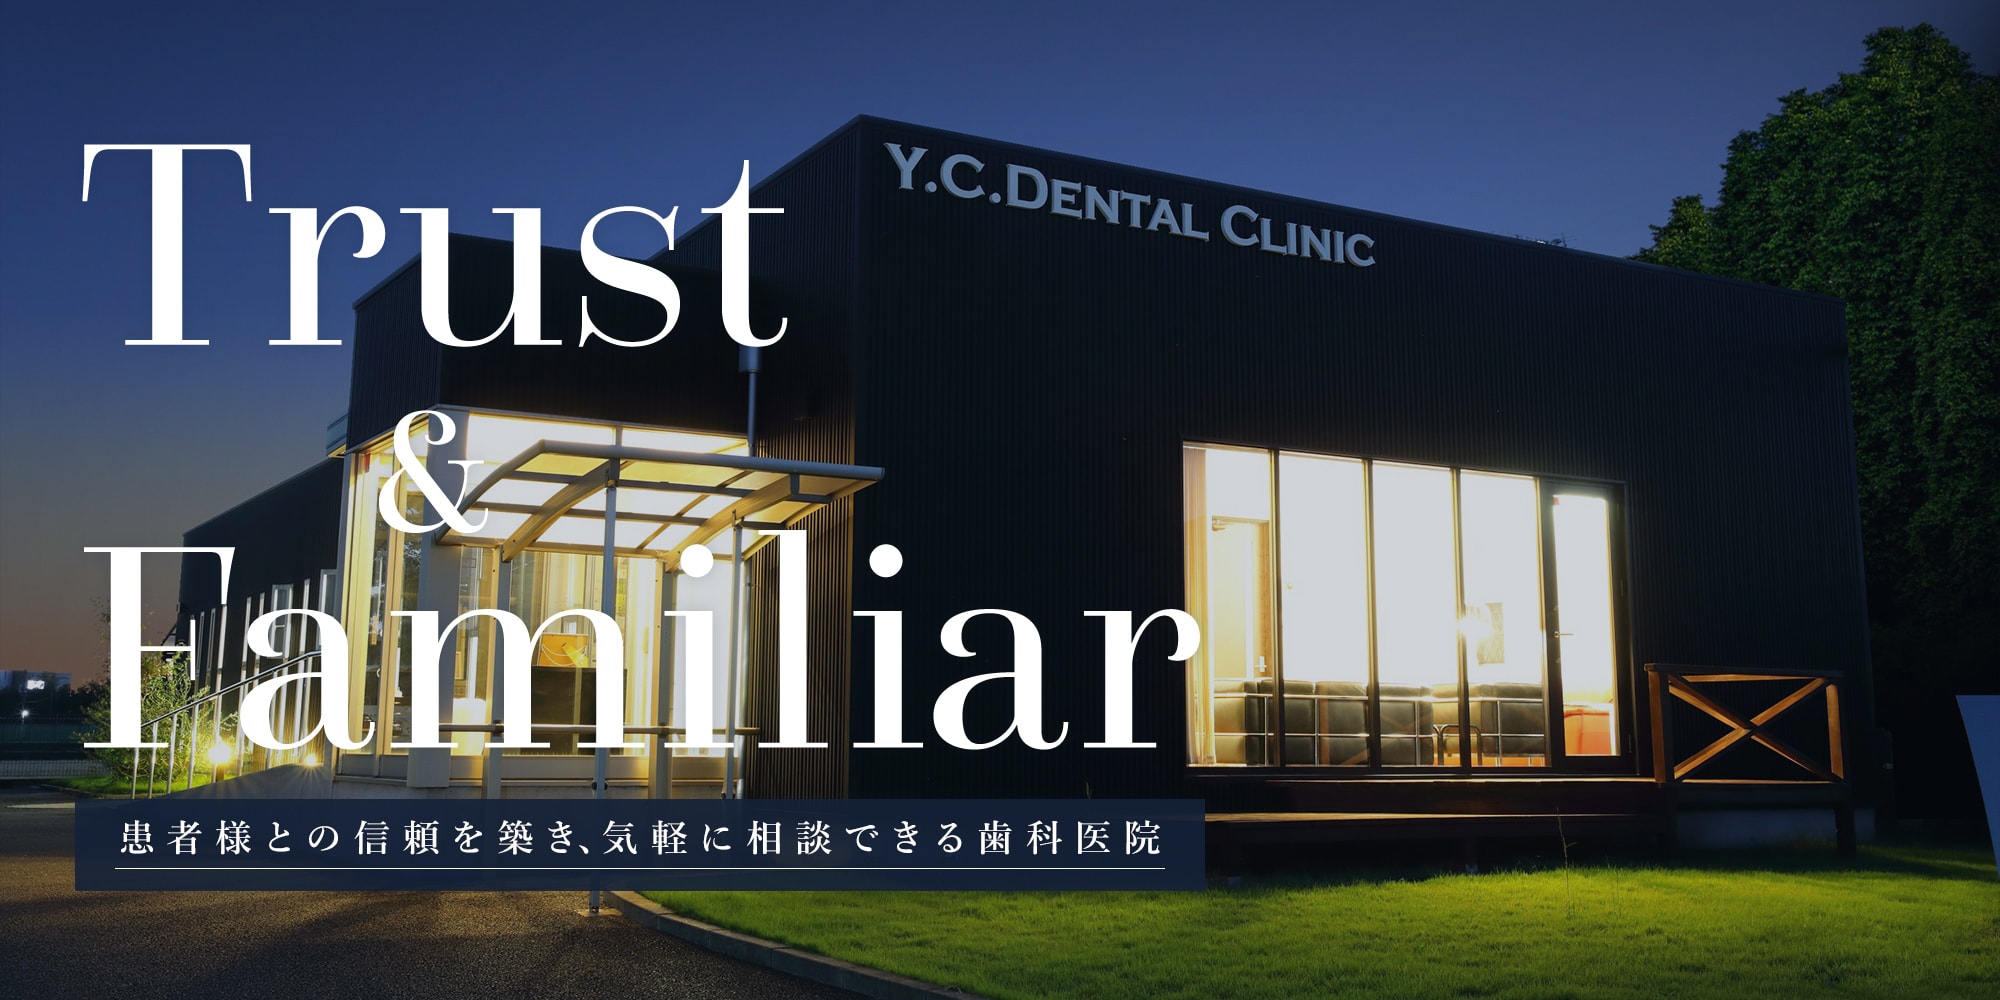 Trust&Familiar 患者様との信頼を築き、気軽に相談できる歯科医院